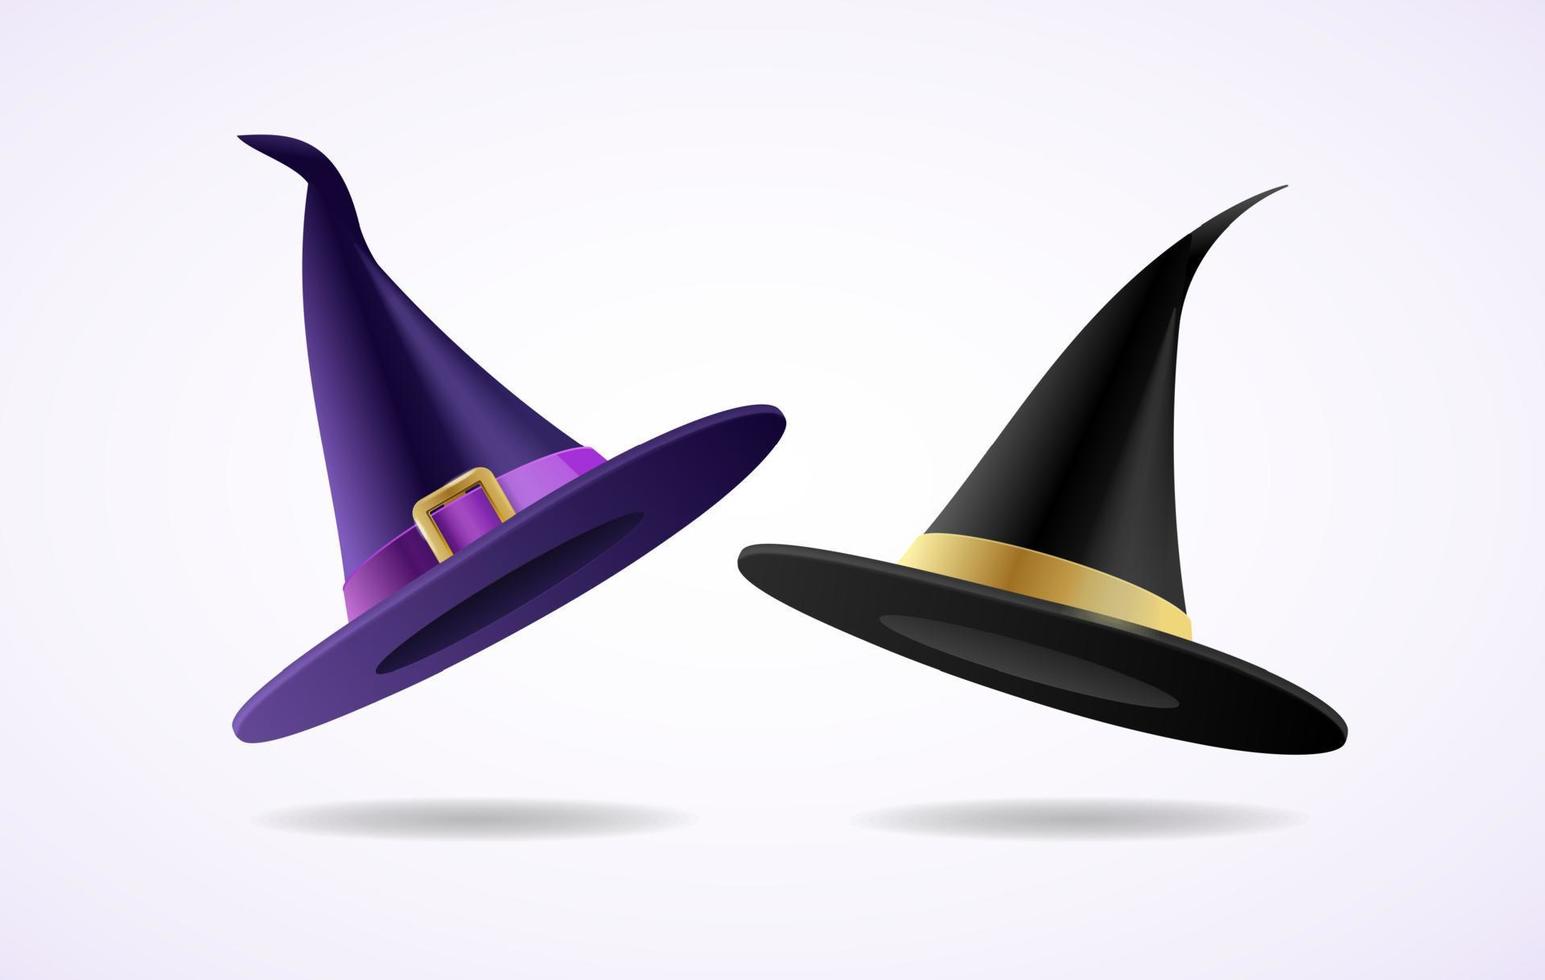 conjunto de sombreros de brujas y magos 3d detallados y realistas. vector